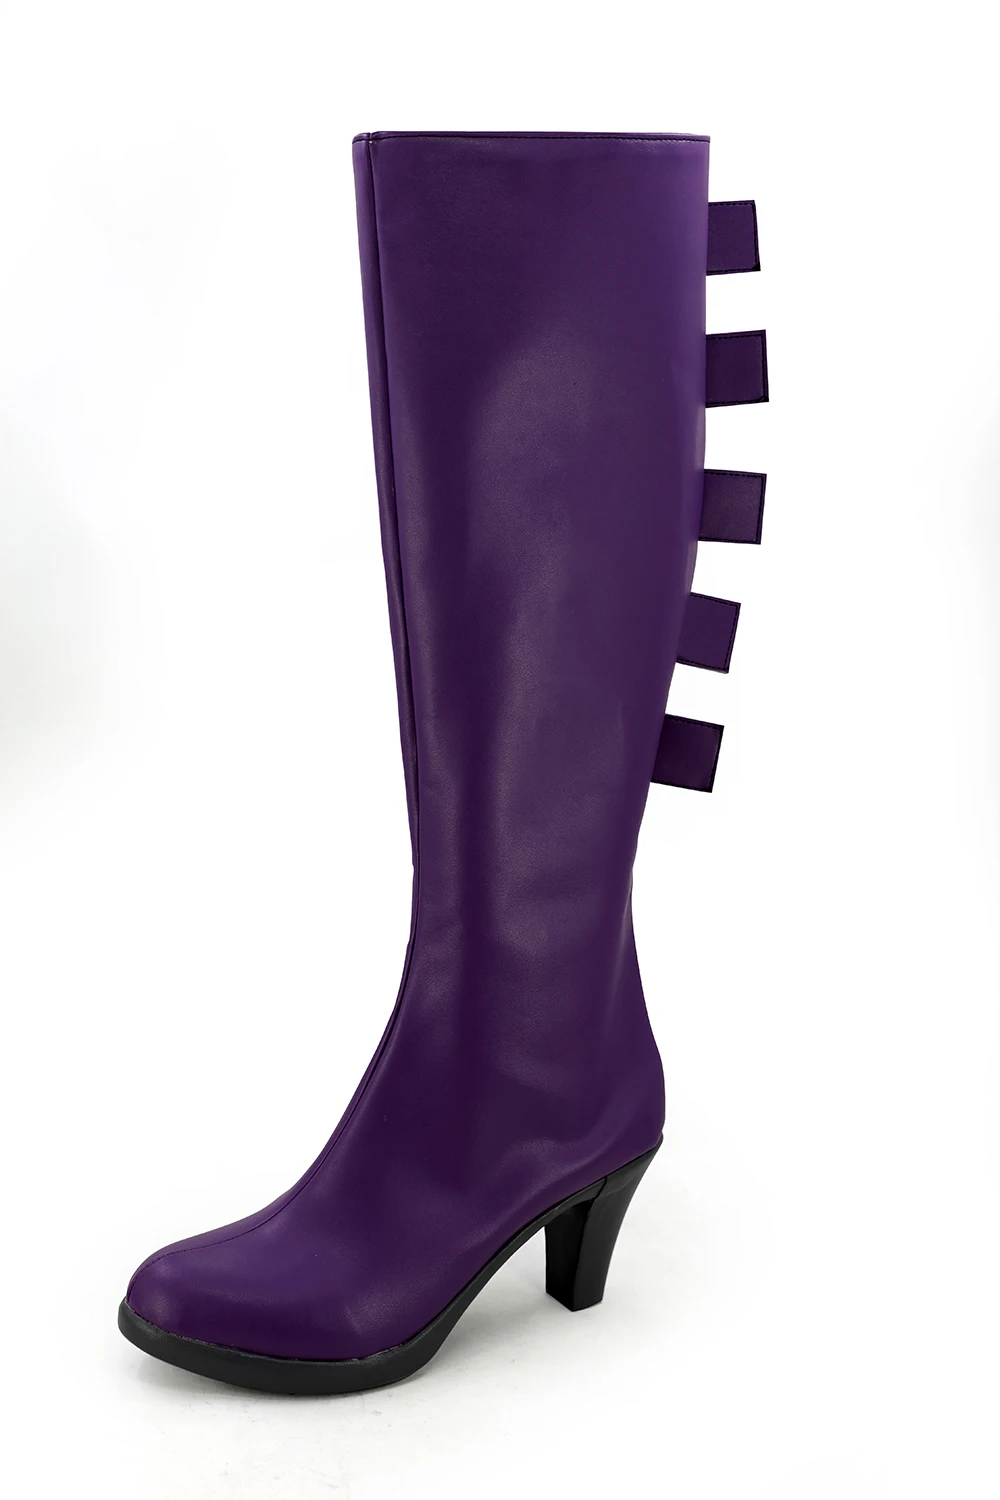 W. i. t. c. h Witch Cornelia Hale/высокие сапоги для костюмированной вечеринки фиолетовая обувь на заказ